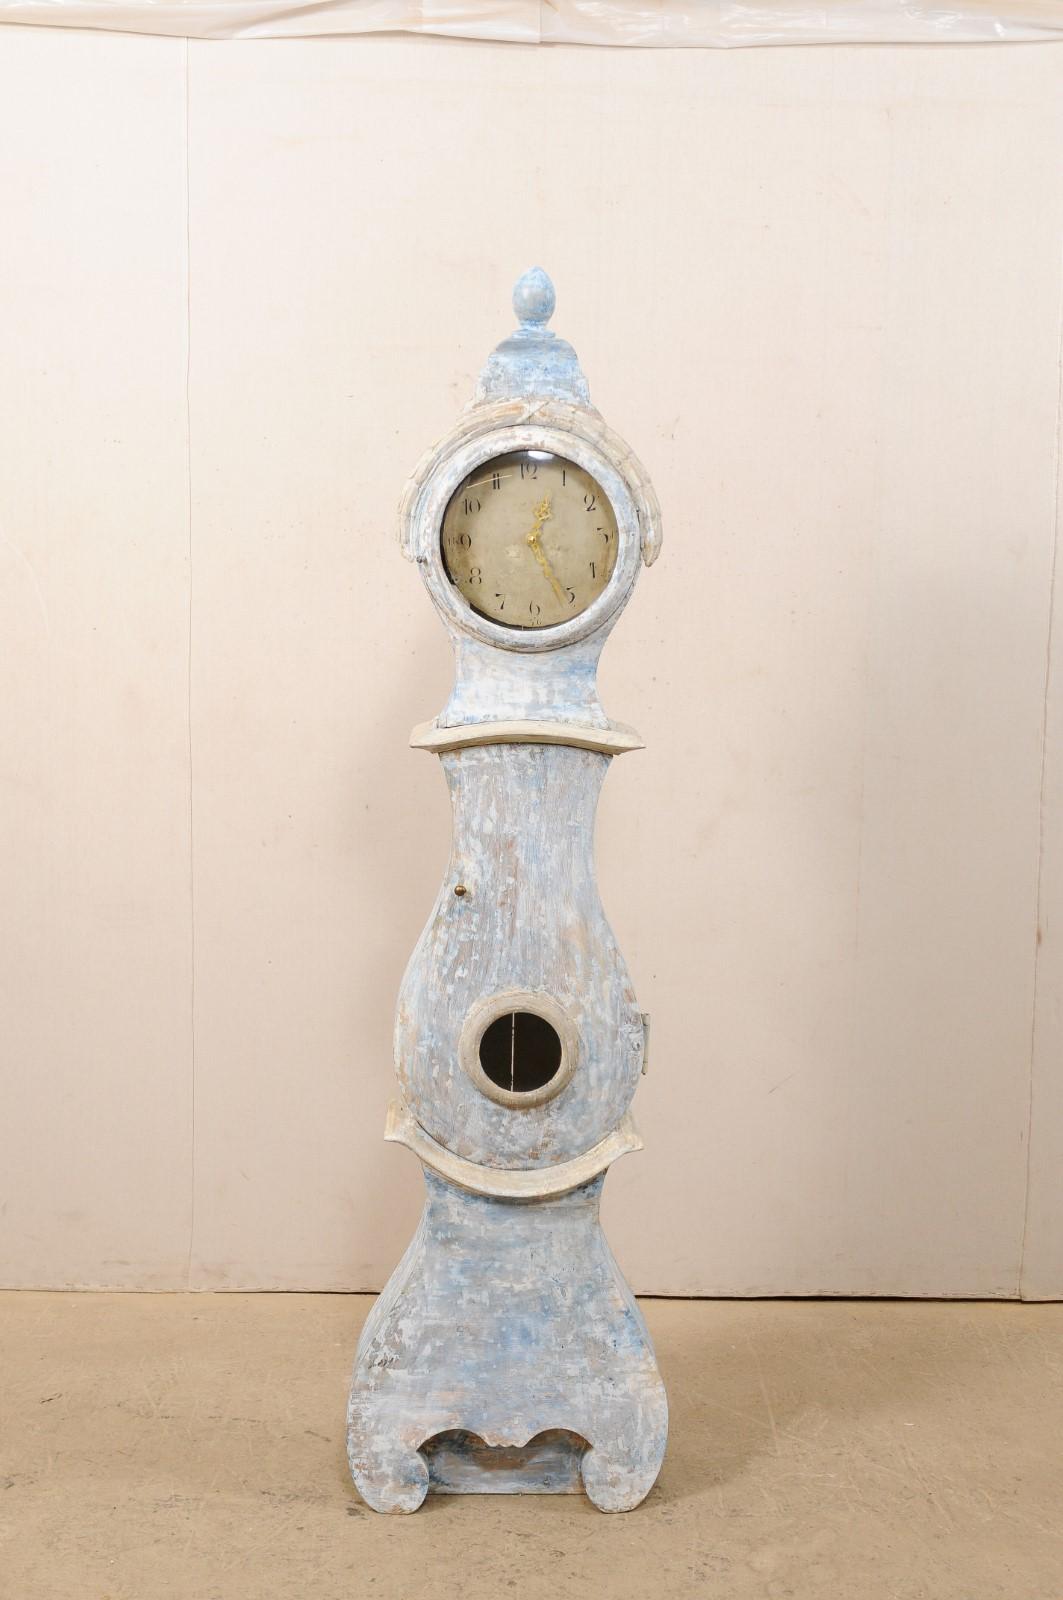 Horloge de sol suédoise en bois sculpté et peint, à long boîtier, du 19e siècle, avec un nouveau mouvement à quartz. Cette horloge de sol ancienne, originaire de Suède, présente un capot exagéré surmonté d'un épi de faîtage en forme d'œuf. L'horloge